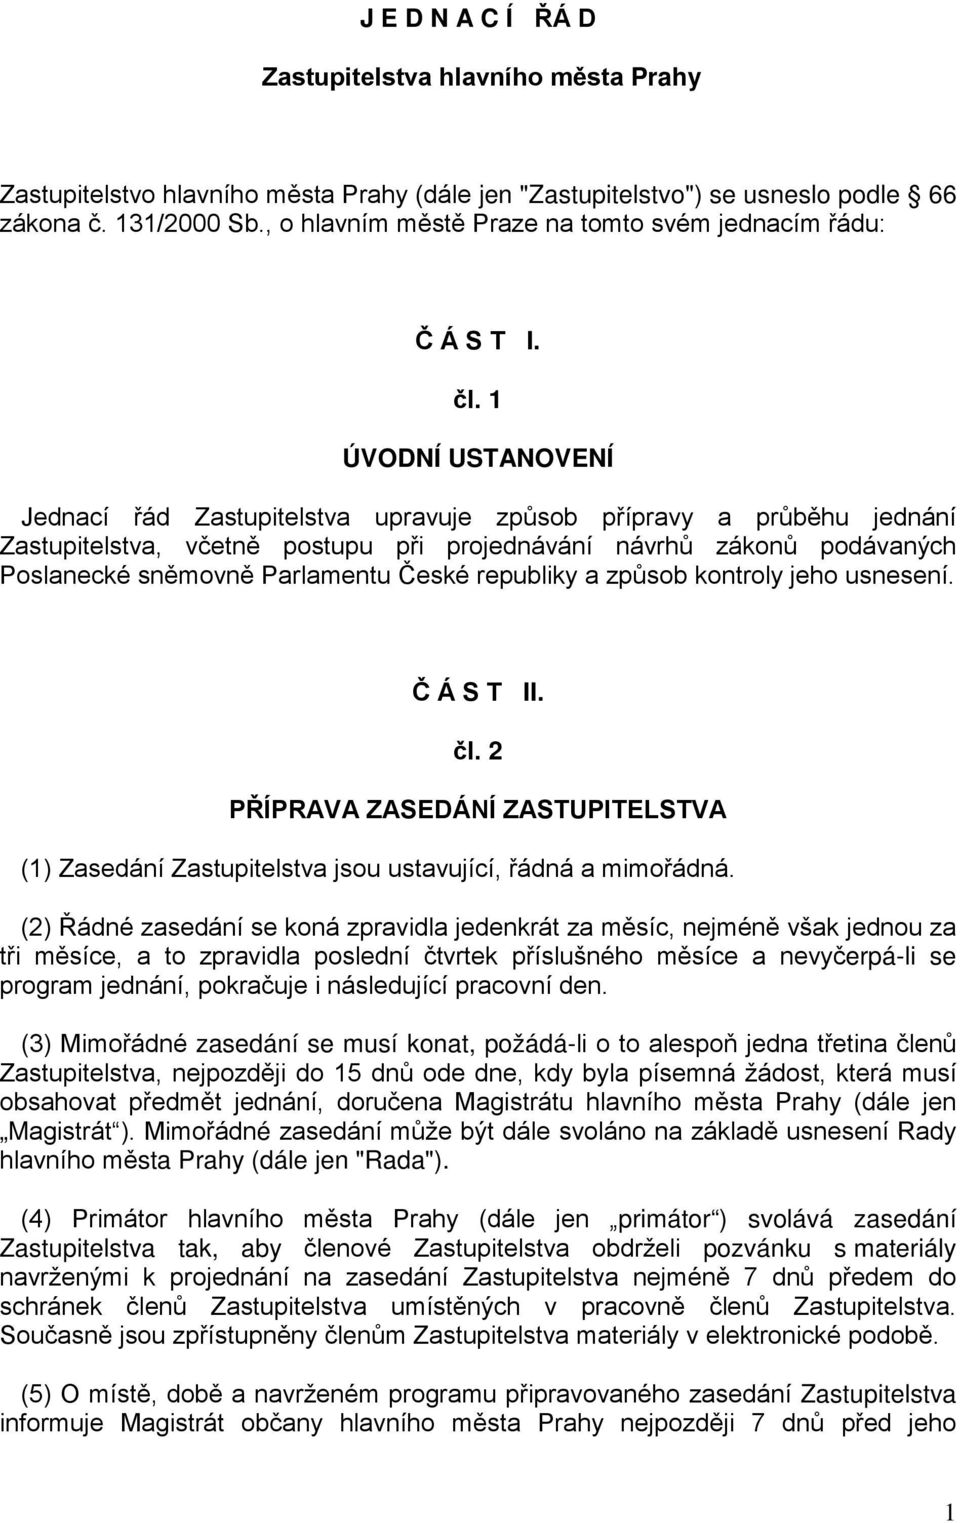 1 ÚVODNÍ USTANOVENÍ Jednací řád Zastupitelstva upravuje způsob přípravy a průběhu jednání Zastupitelstva, včetně postupu při projednávání návrhů zákonů podávaných Poslanecké sněmovně Parlamentu České